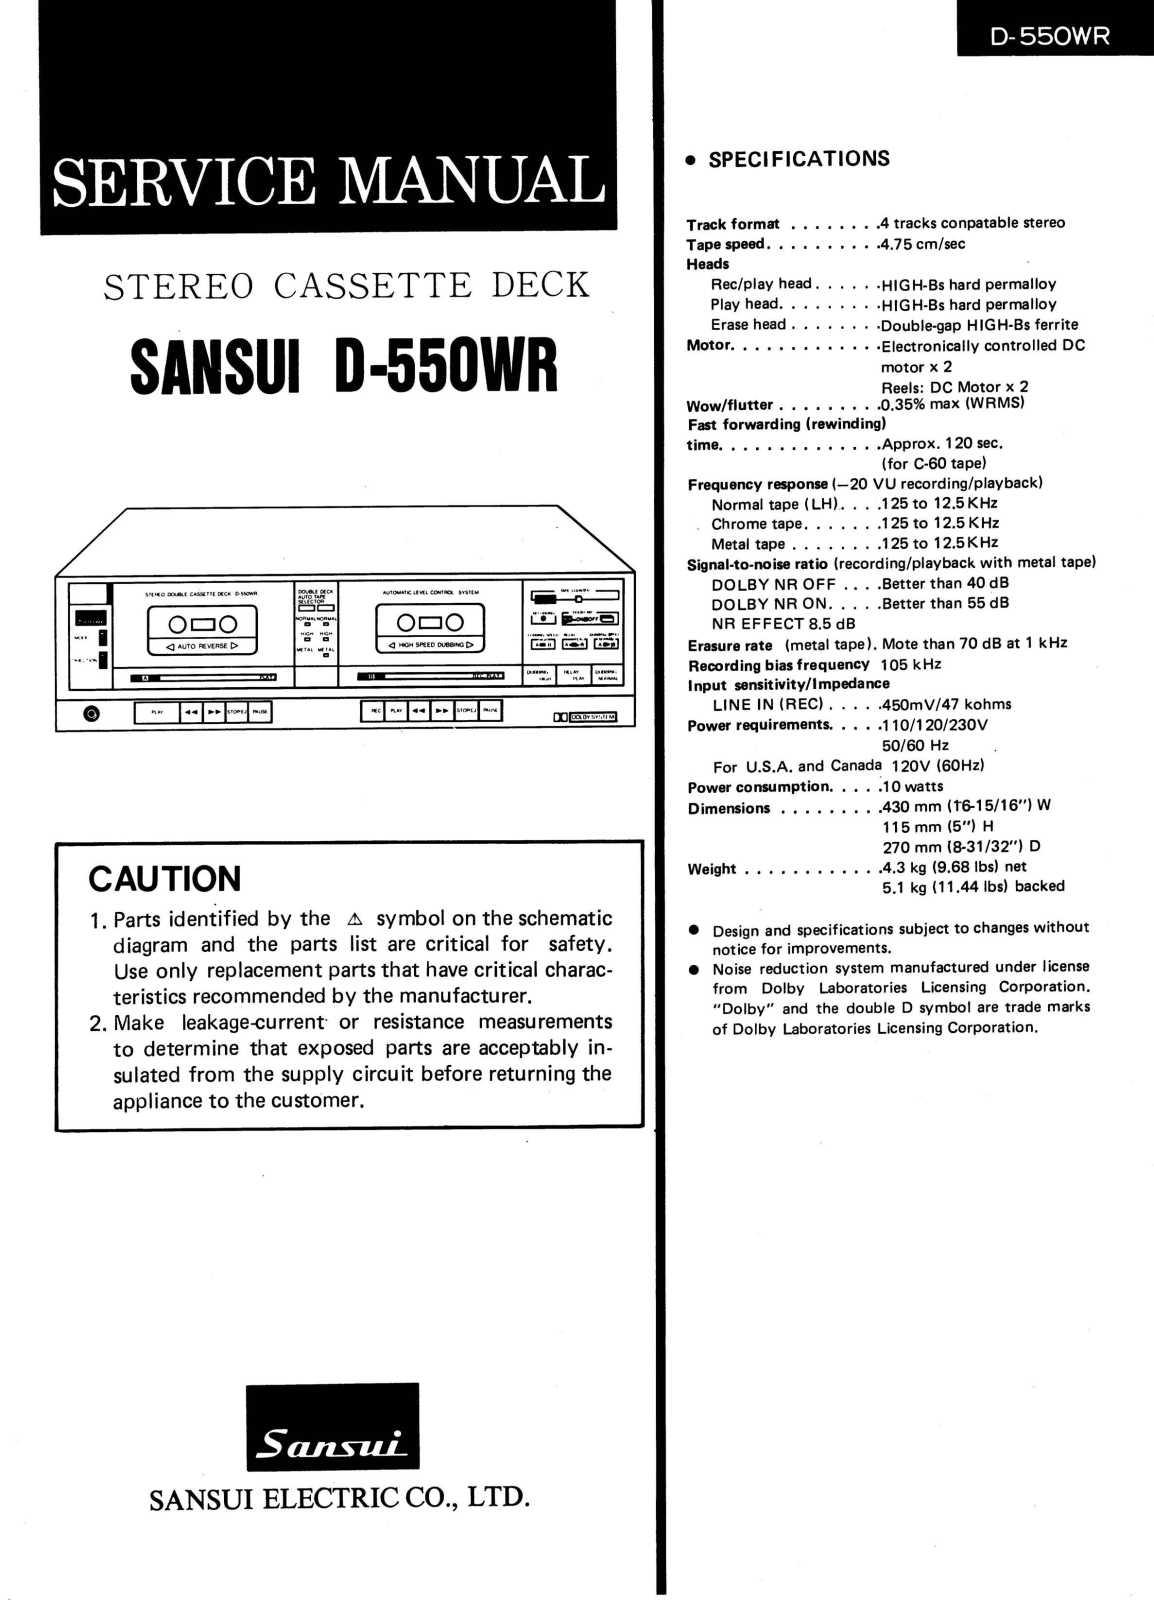 Sansui D-550-WR Service Manual